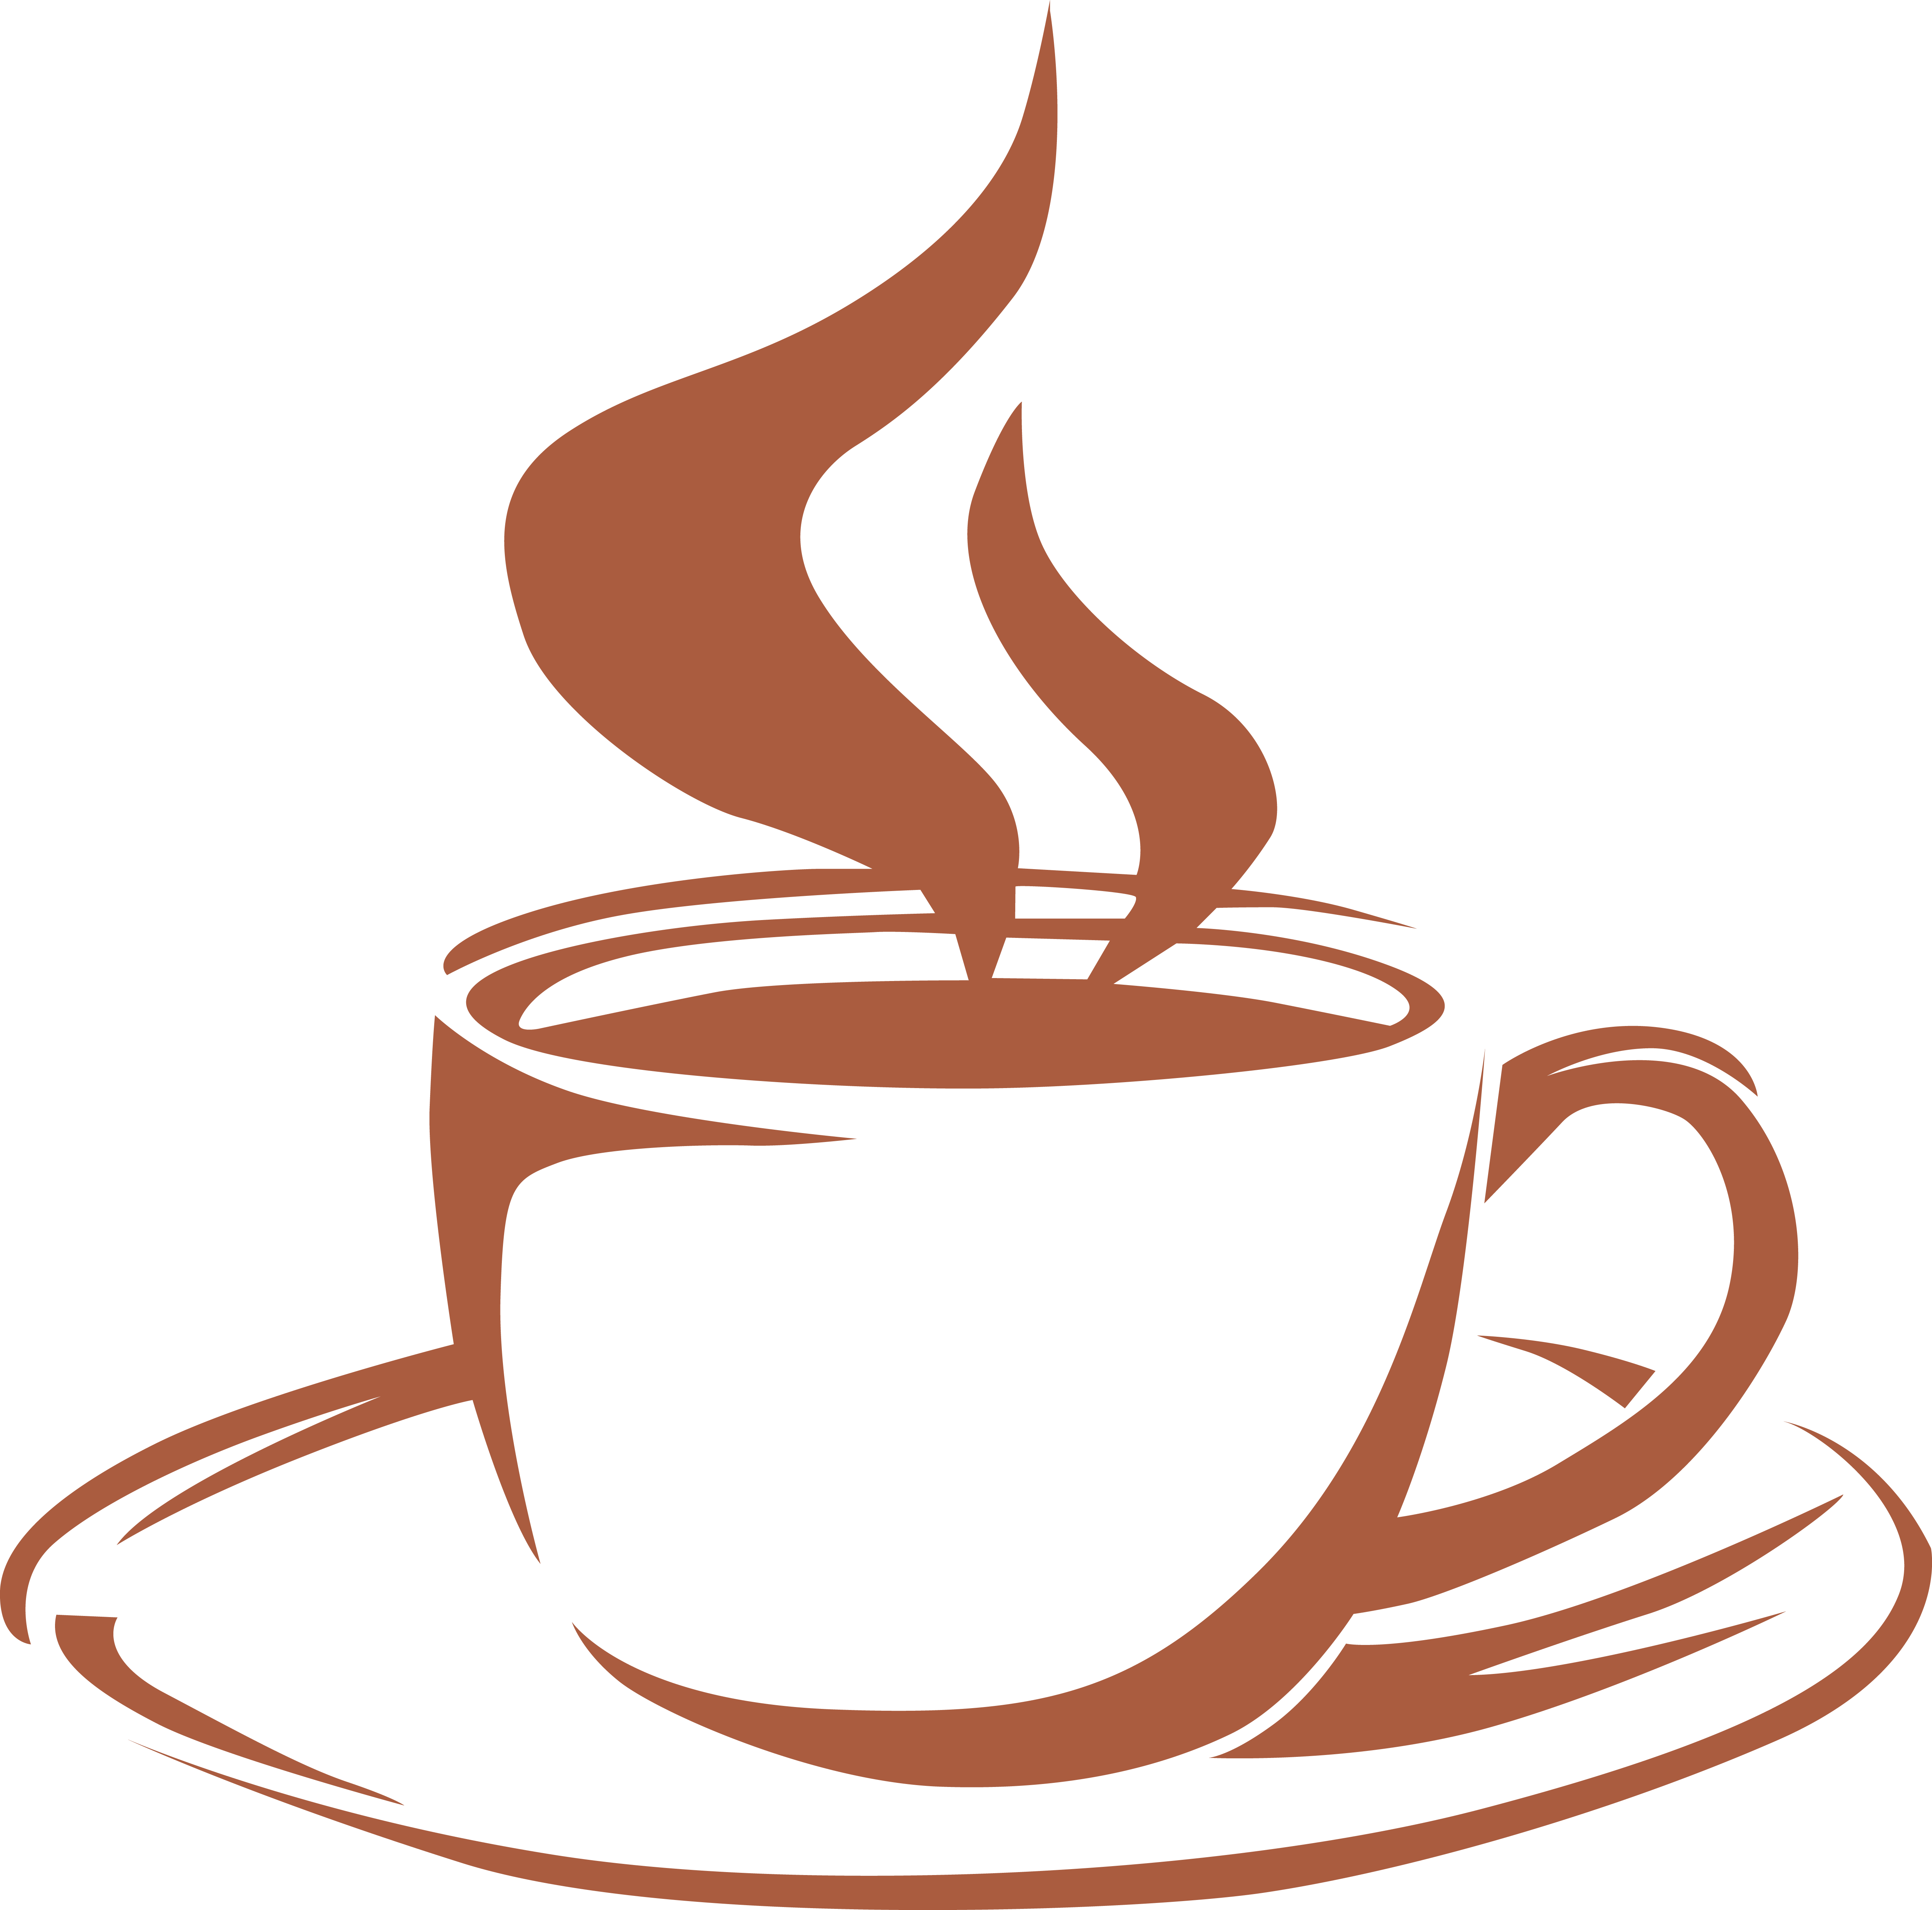 Coffee Latte Macchiato Cappuccino Cafe - Coffee Cup Steam (5197x5138)